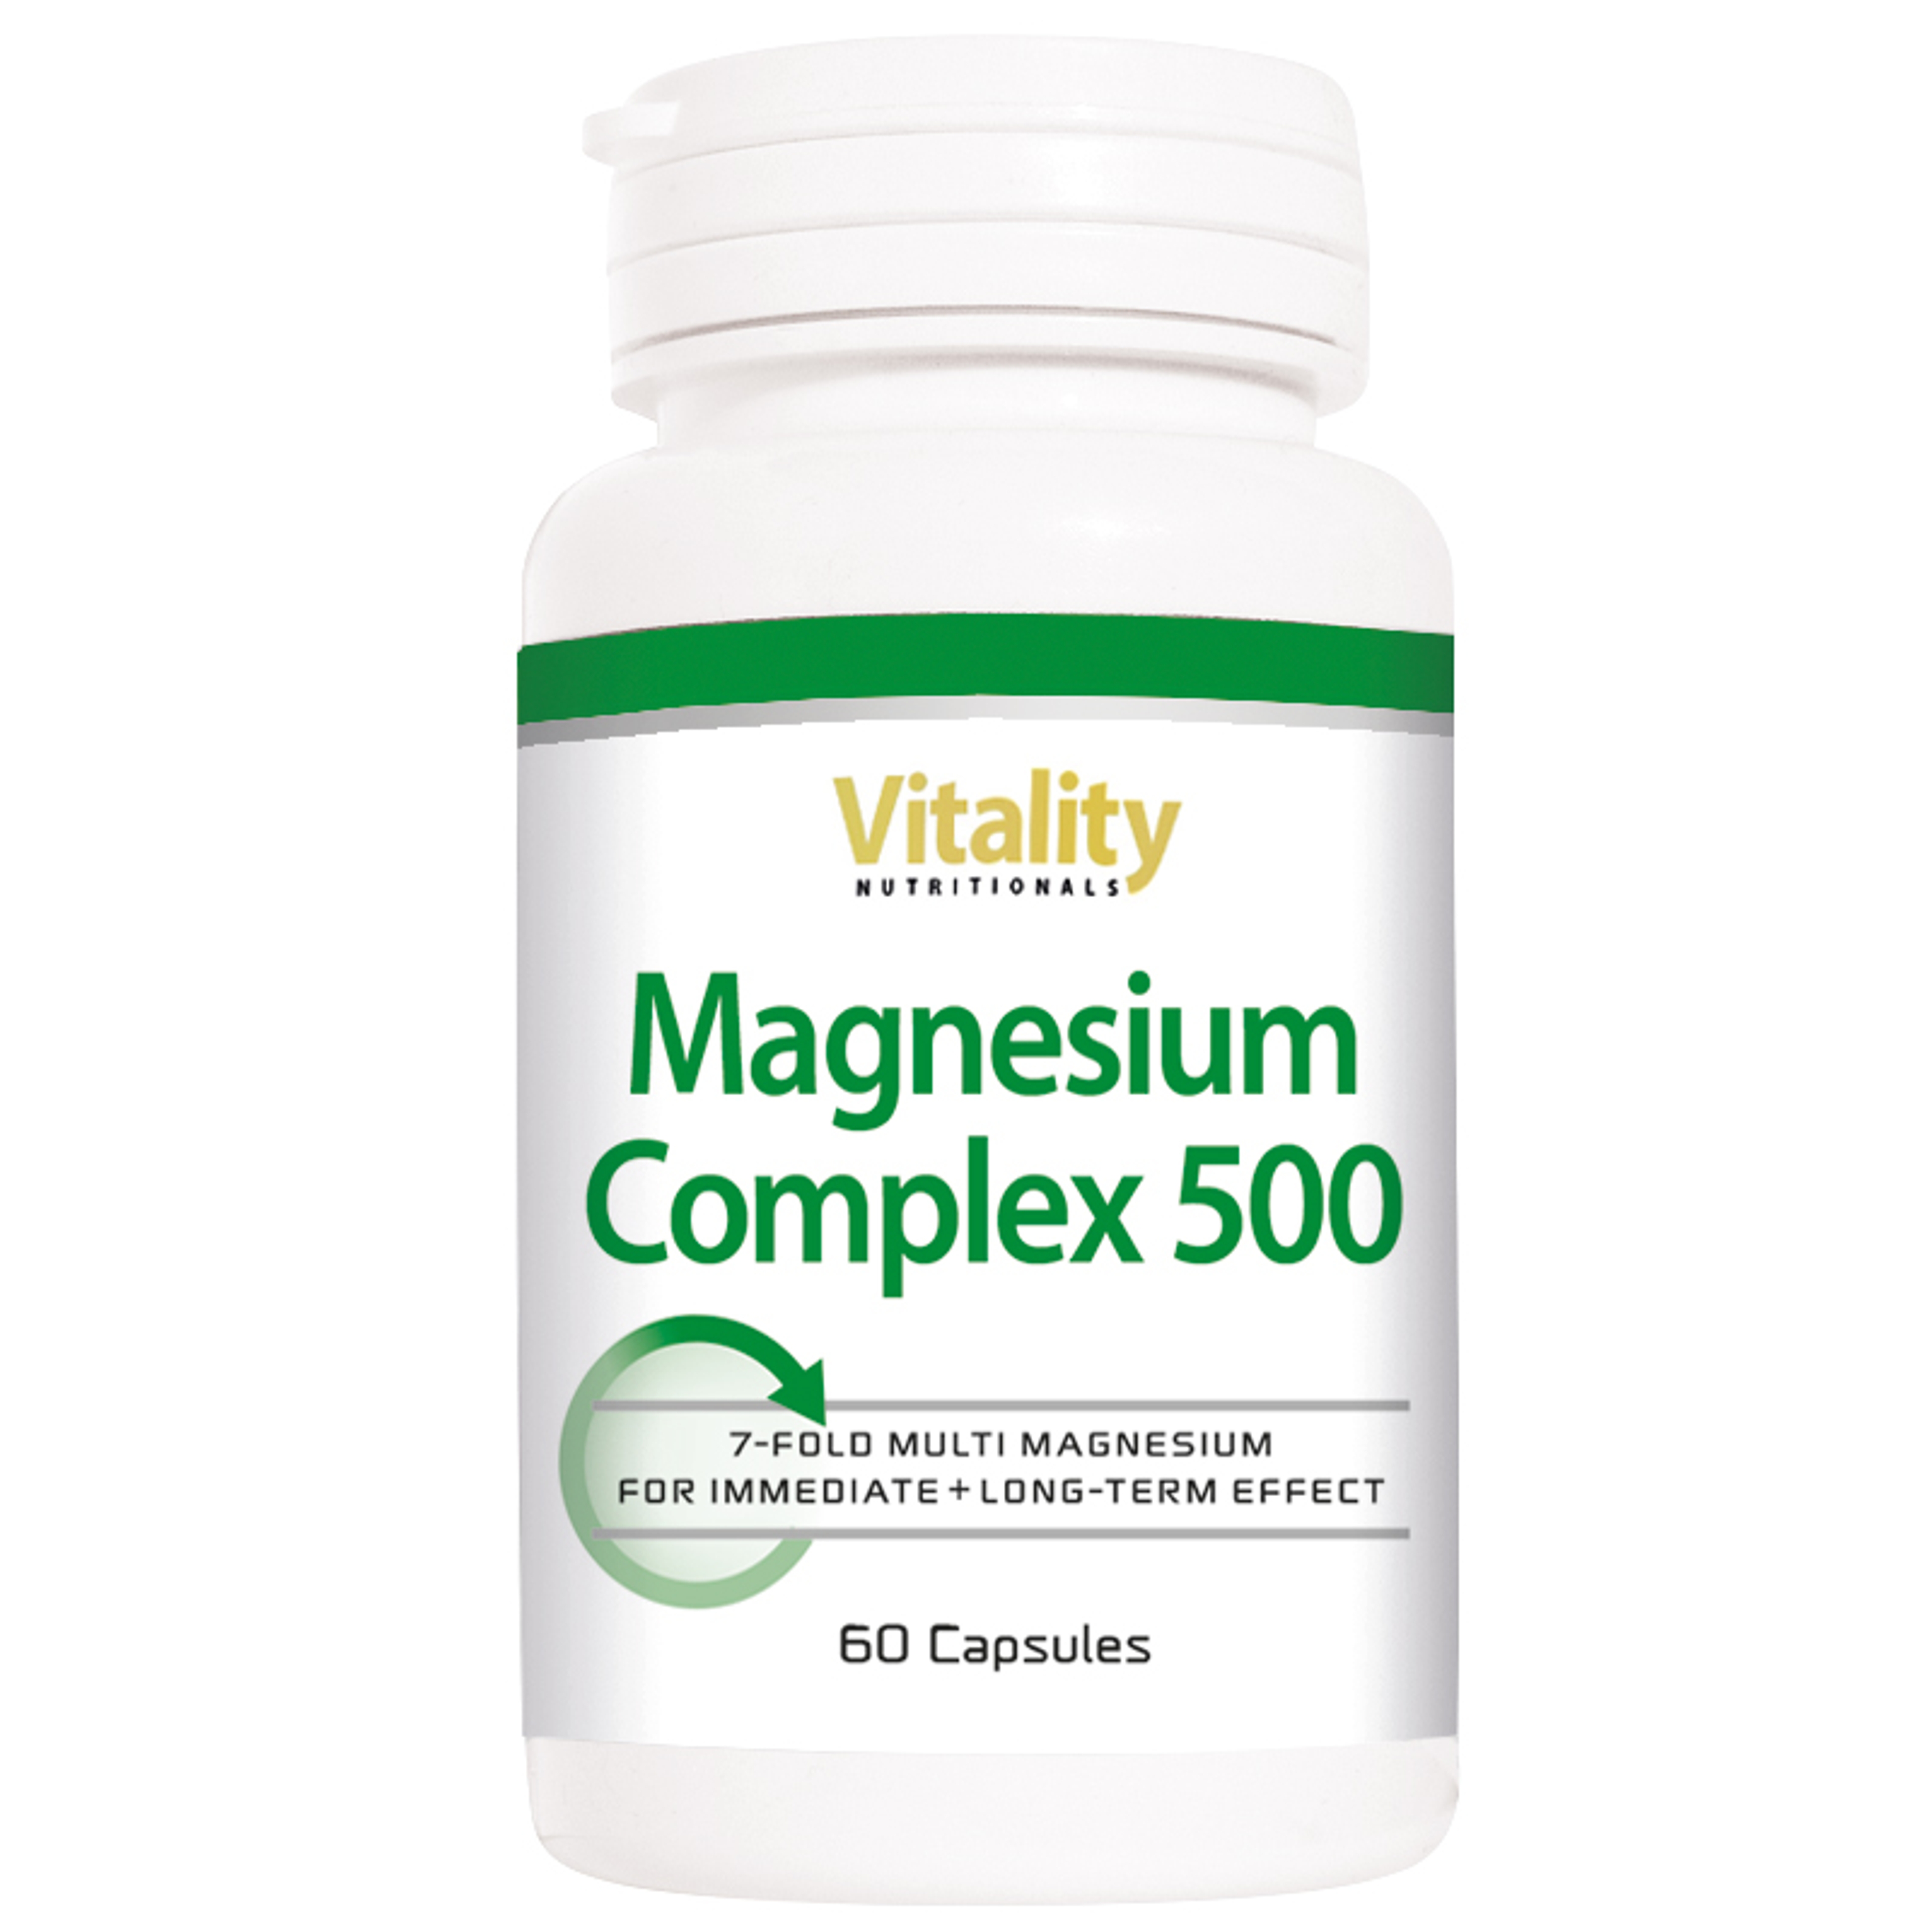 Magnesium Complex 500 - 60 Capsules